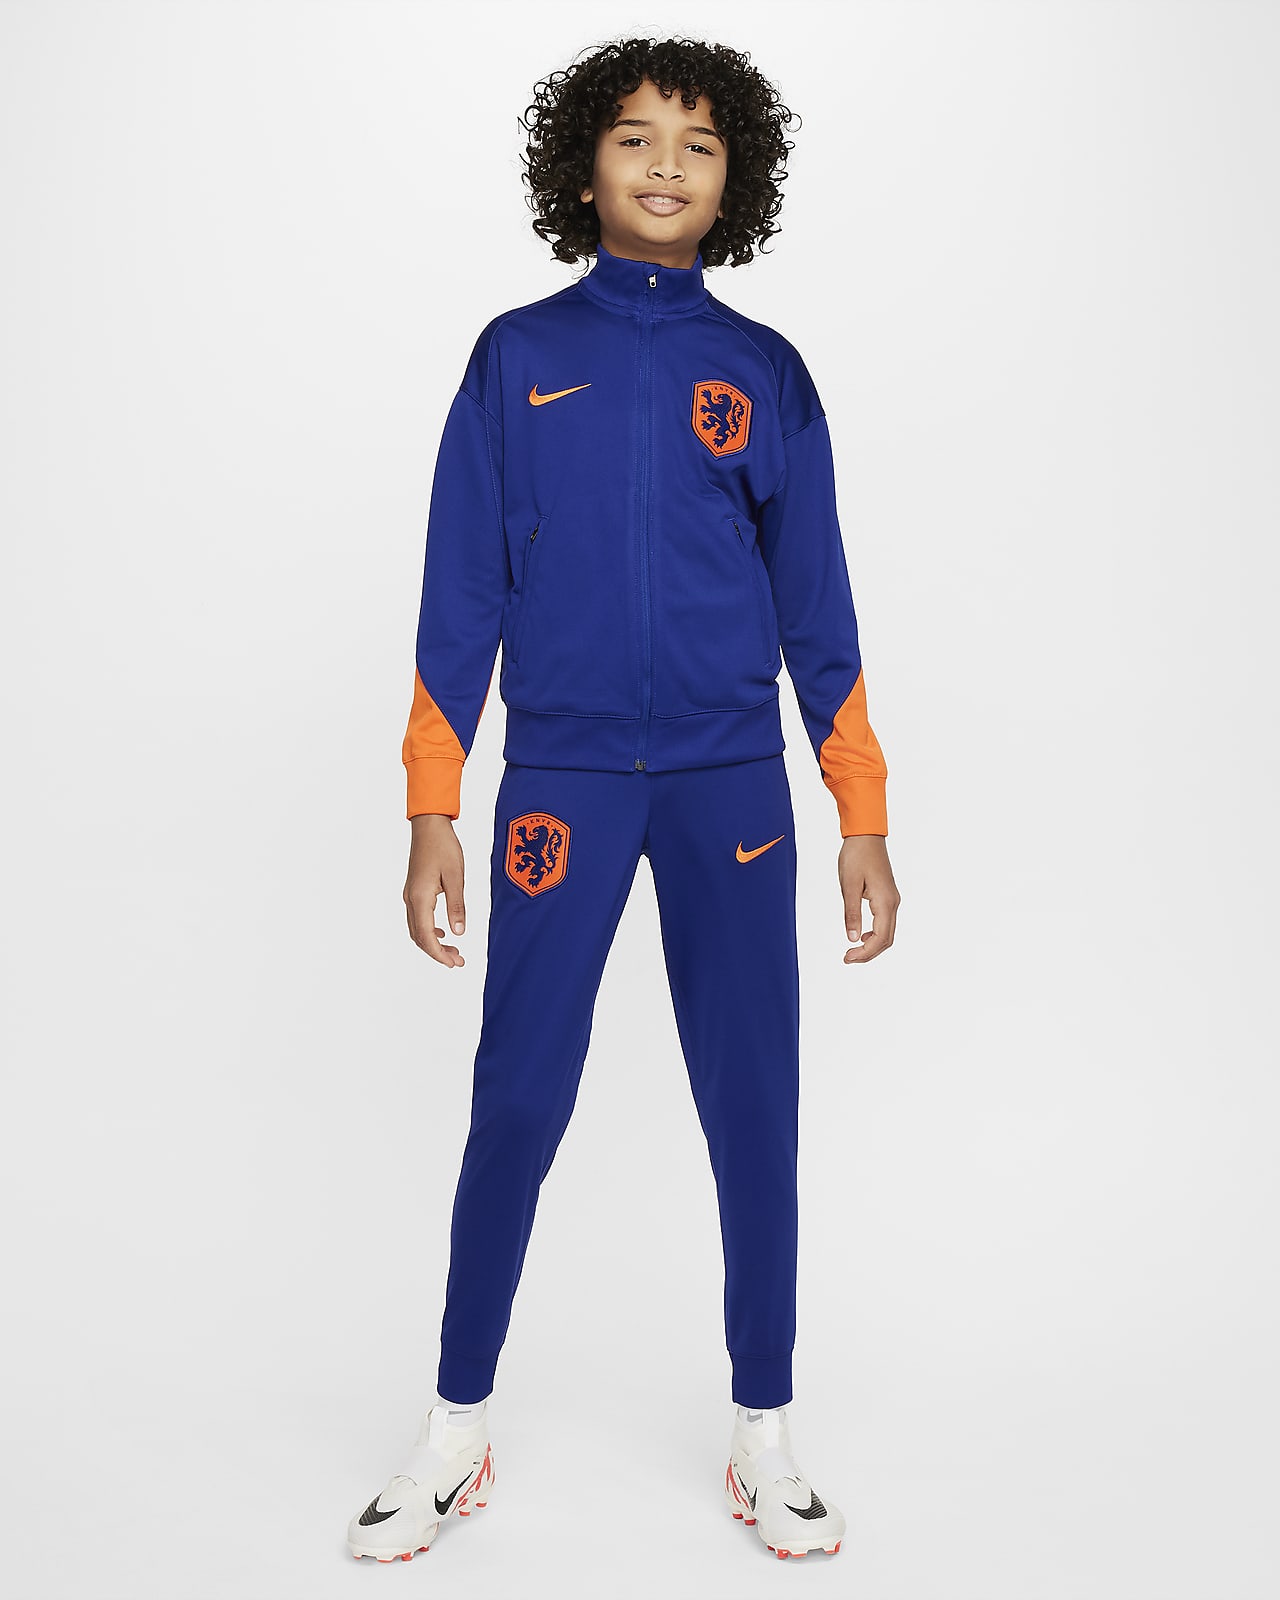 Ποδοσφαιρική πλεκτή φόρμα Nike Dri-FIT Κάτω Χώρες Strike για μεγάλα παιδιά